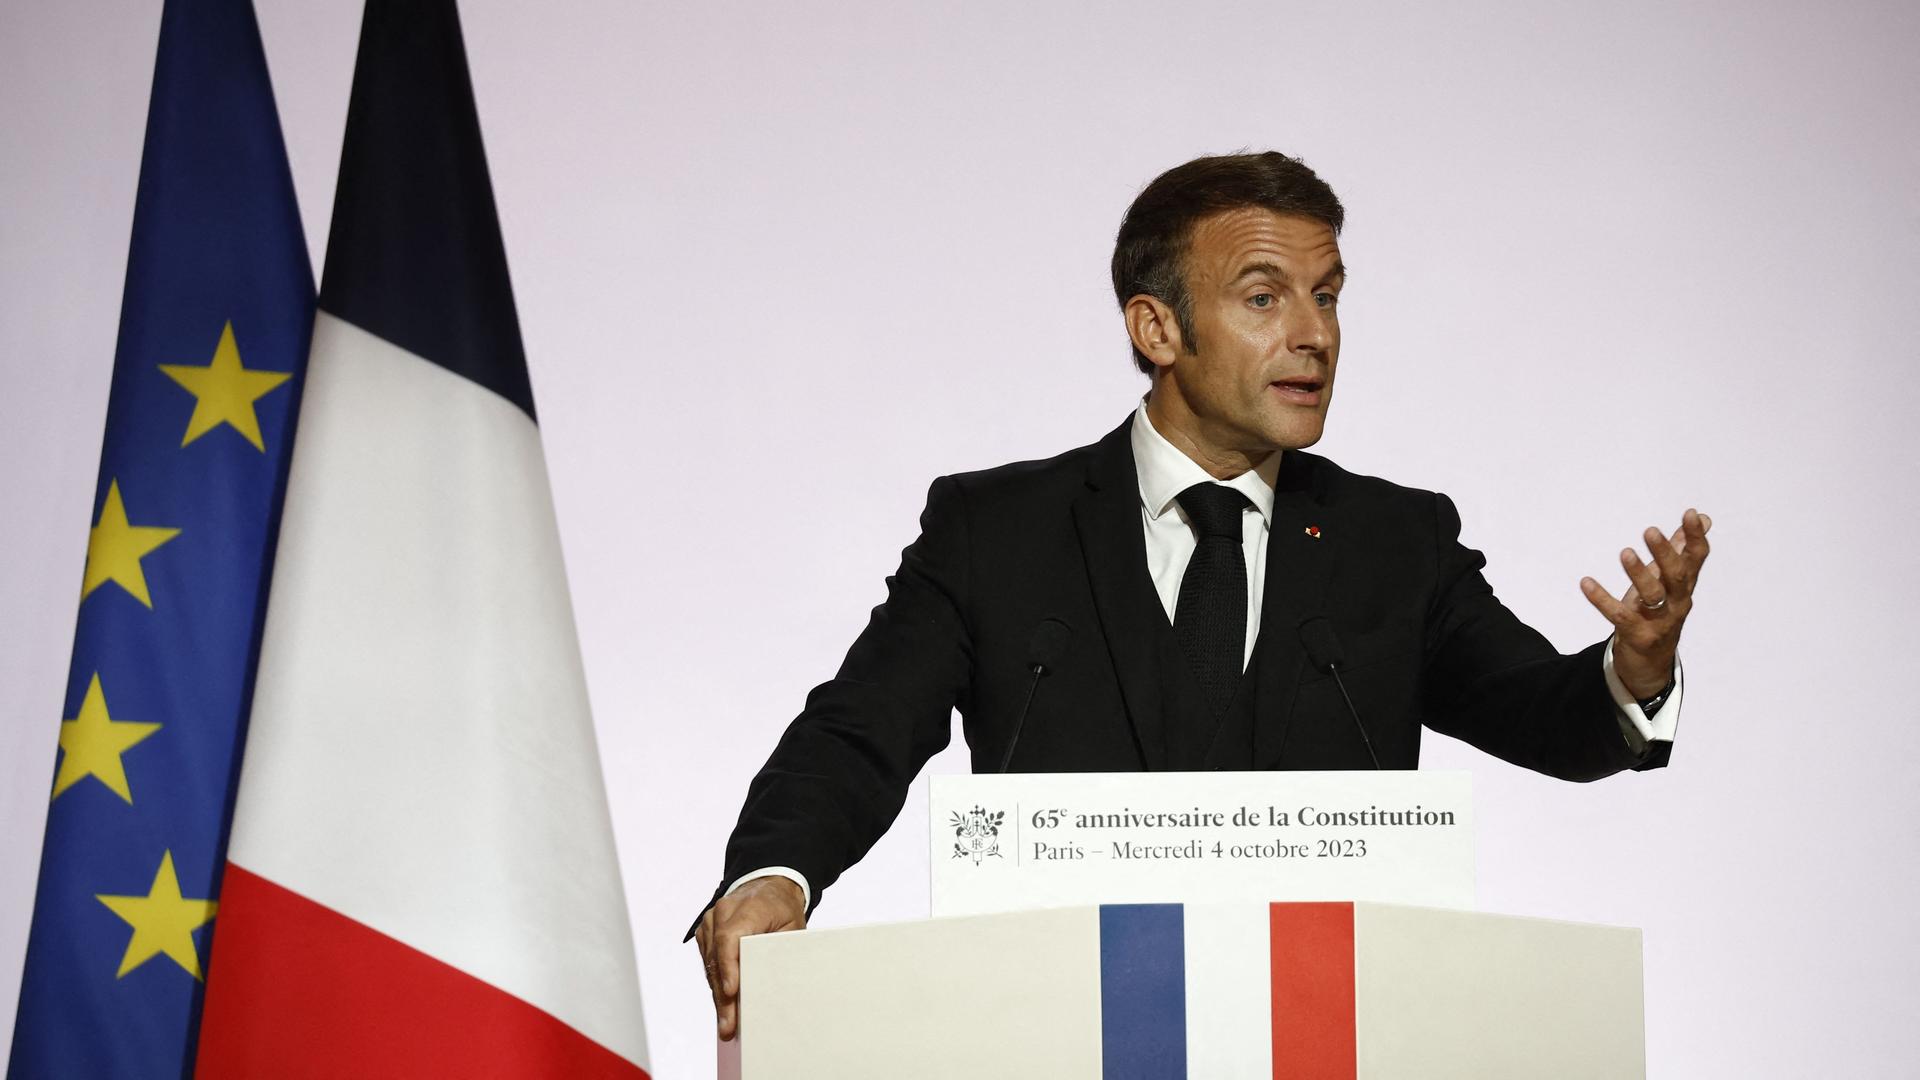 Der französische Präsident Macron spricht an einem Rednerpult, im Hintergrund sind die französische und die EU-Flagge zu erkennen.